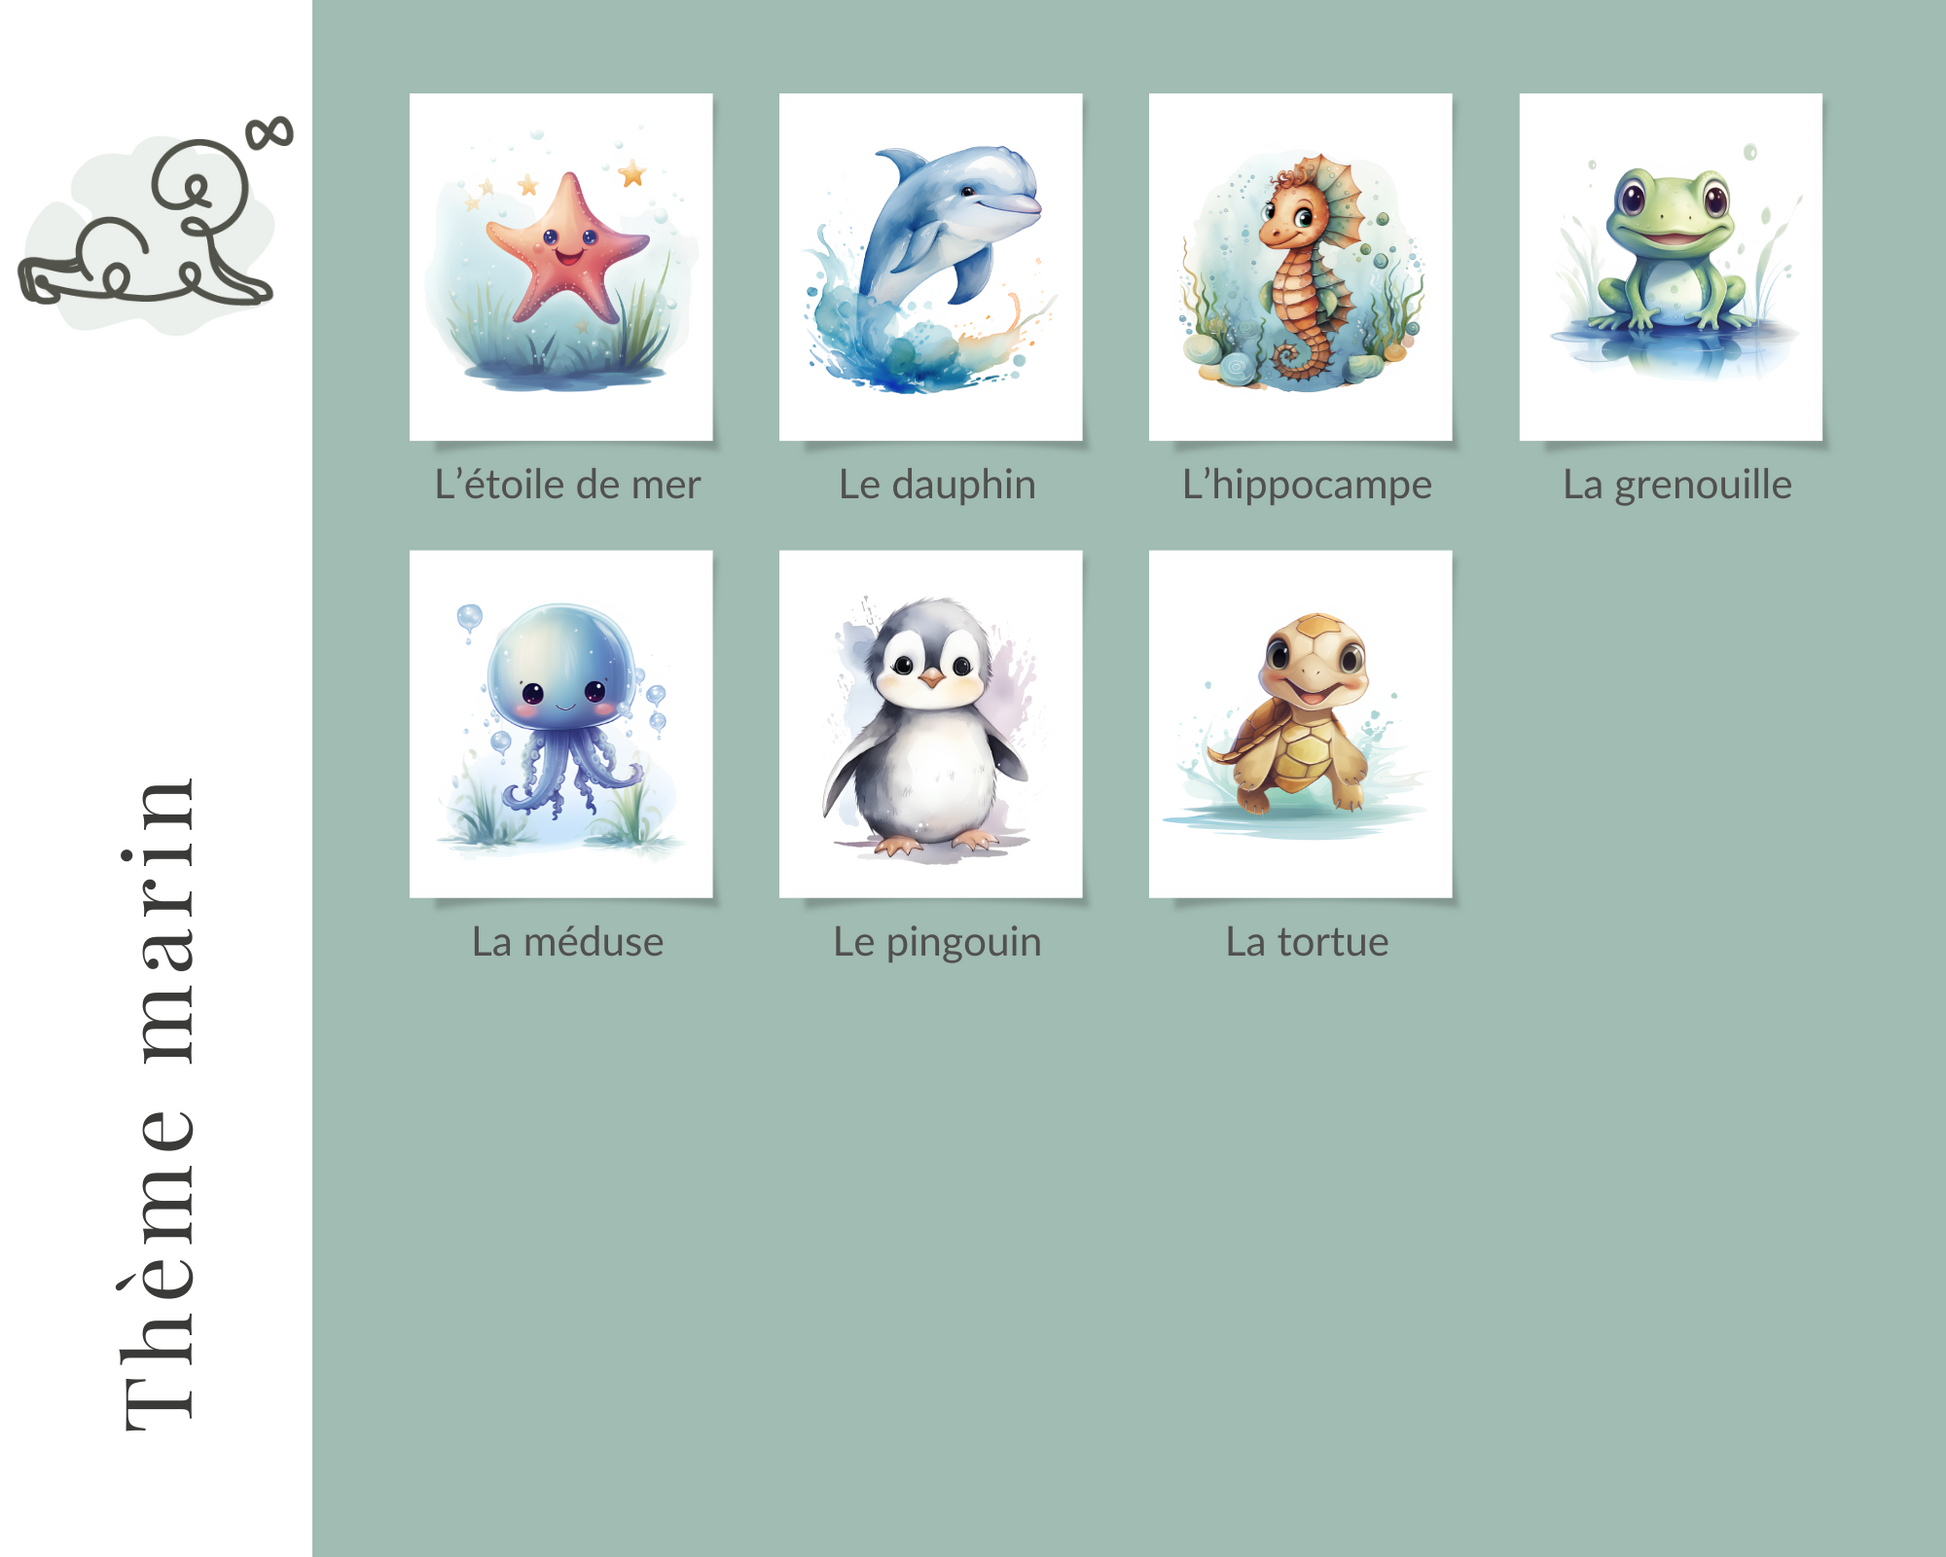 Illustration chambre enfant, Illustration chambre bébé, thème marin, étoile de mer, dauphin, hippocampe, grenouille, méduse, pingouin, tortue